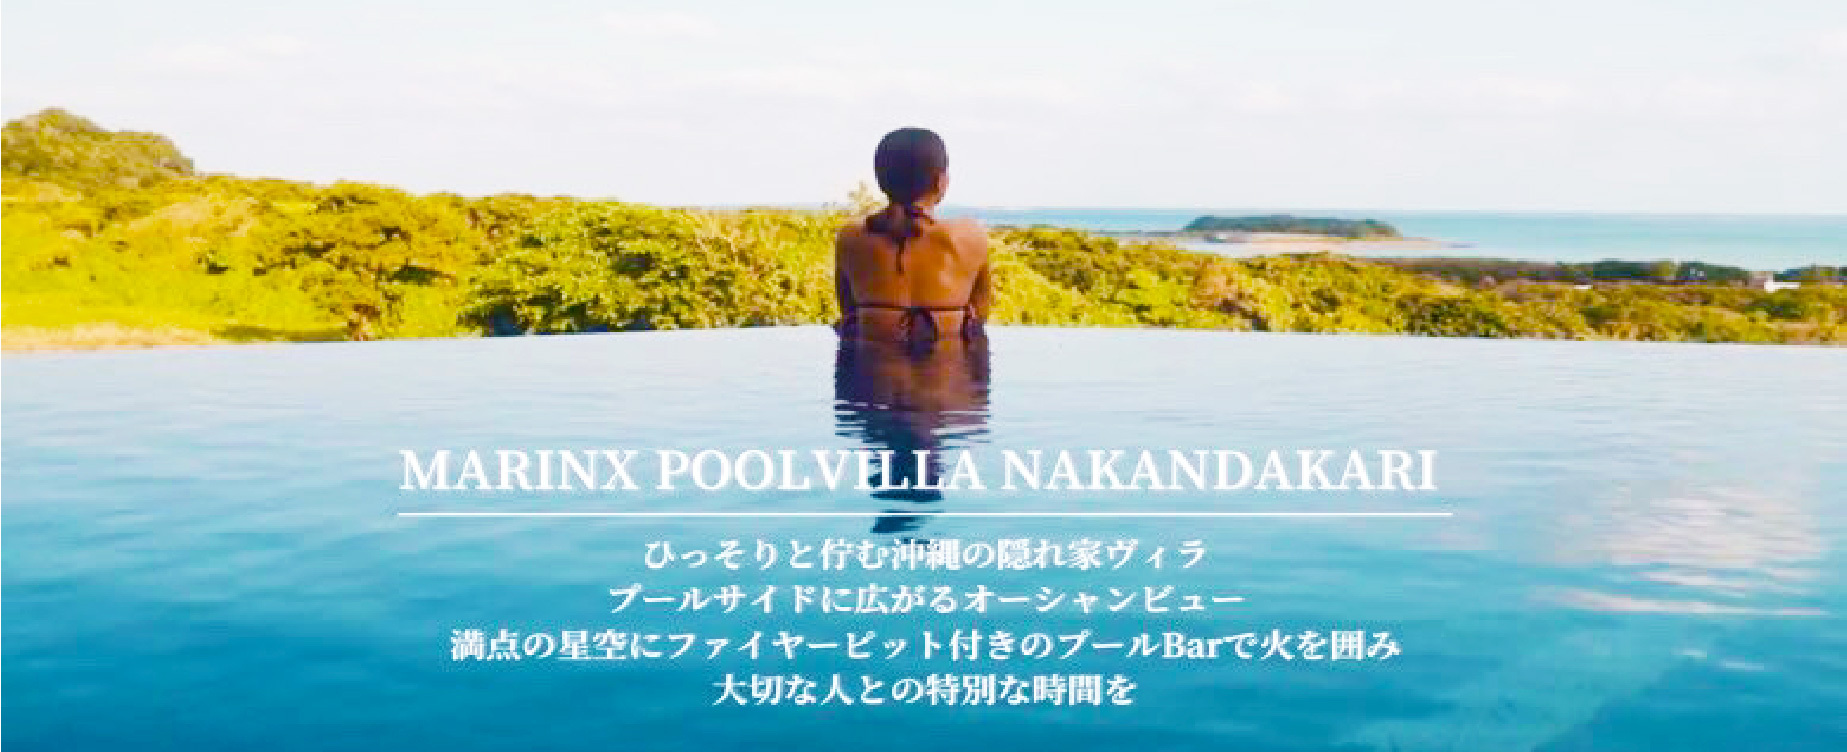 MARINX-POOL-VILLA-NAKANDAKARI,沖縄ホテル,オーシャンビューホテル,プール付きホテル